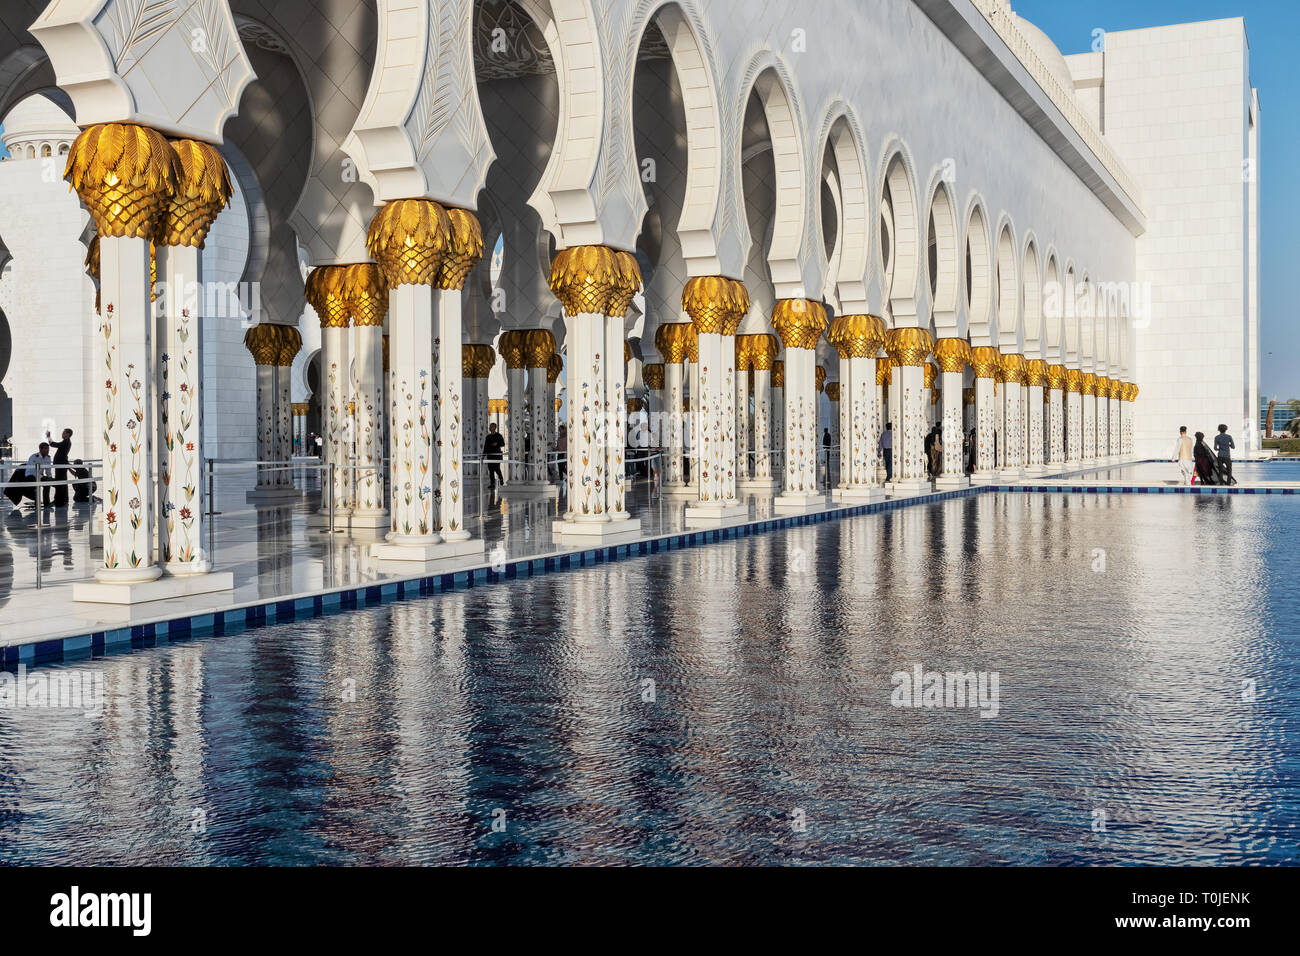 UAE/ABUDHABI 15 DEZ 2018 - Fassade des berühmten arabischen Moschee mit Sonnenuntergang. UAE. Stockfoto